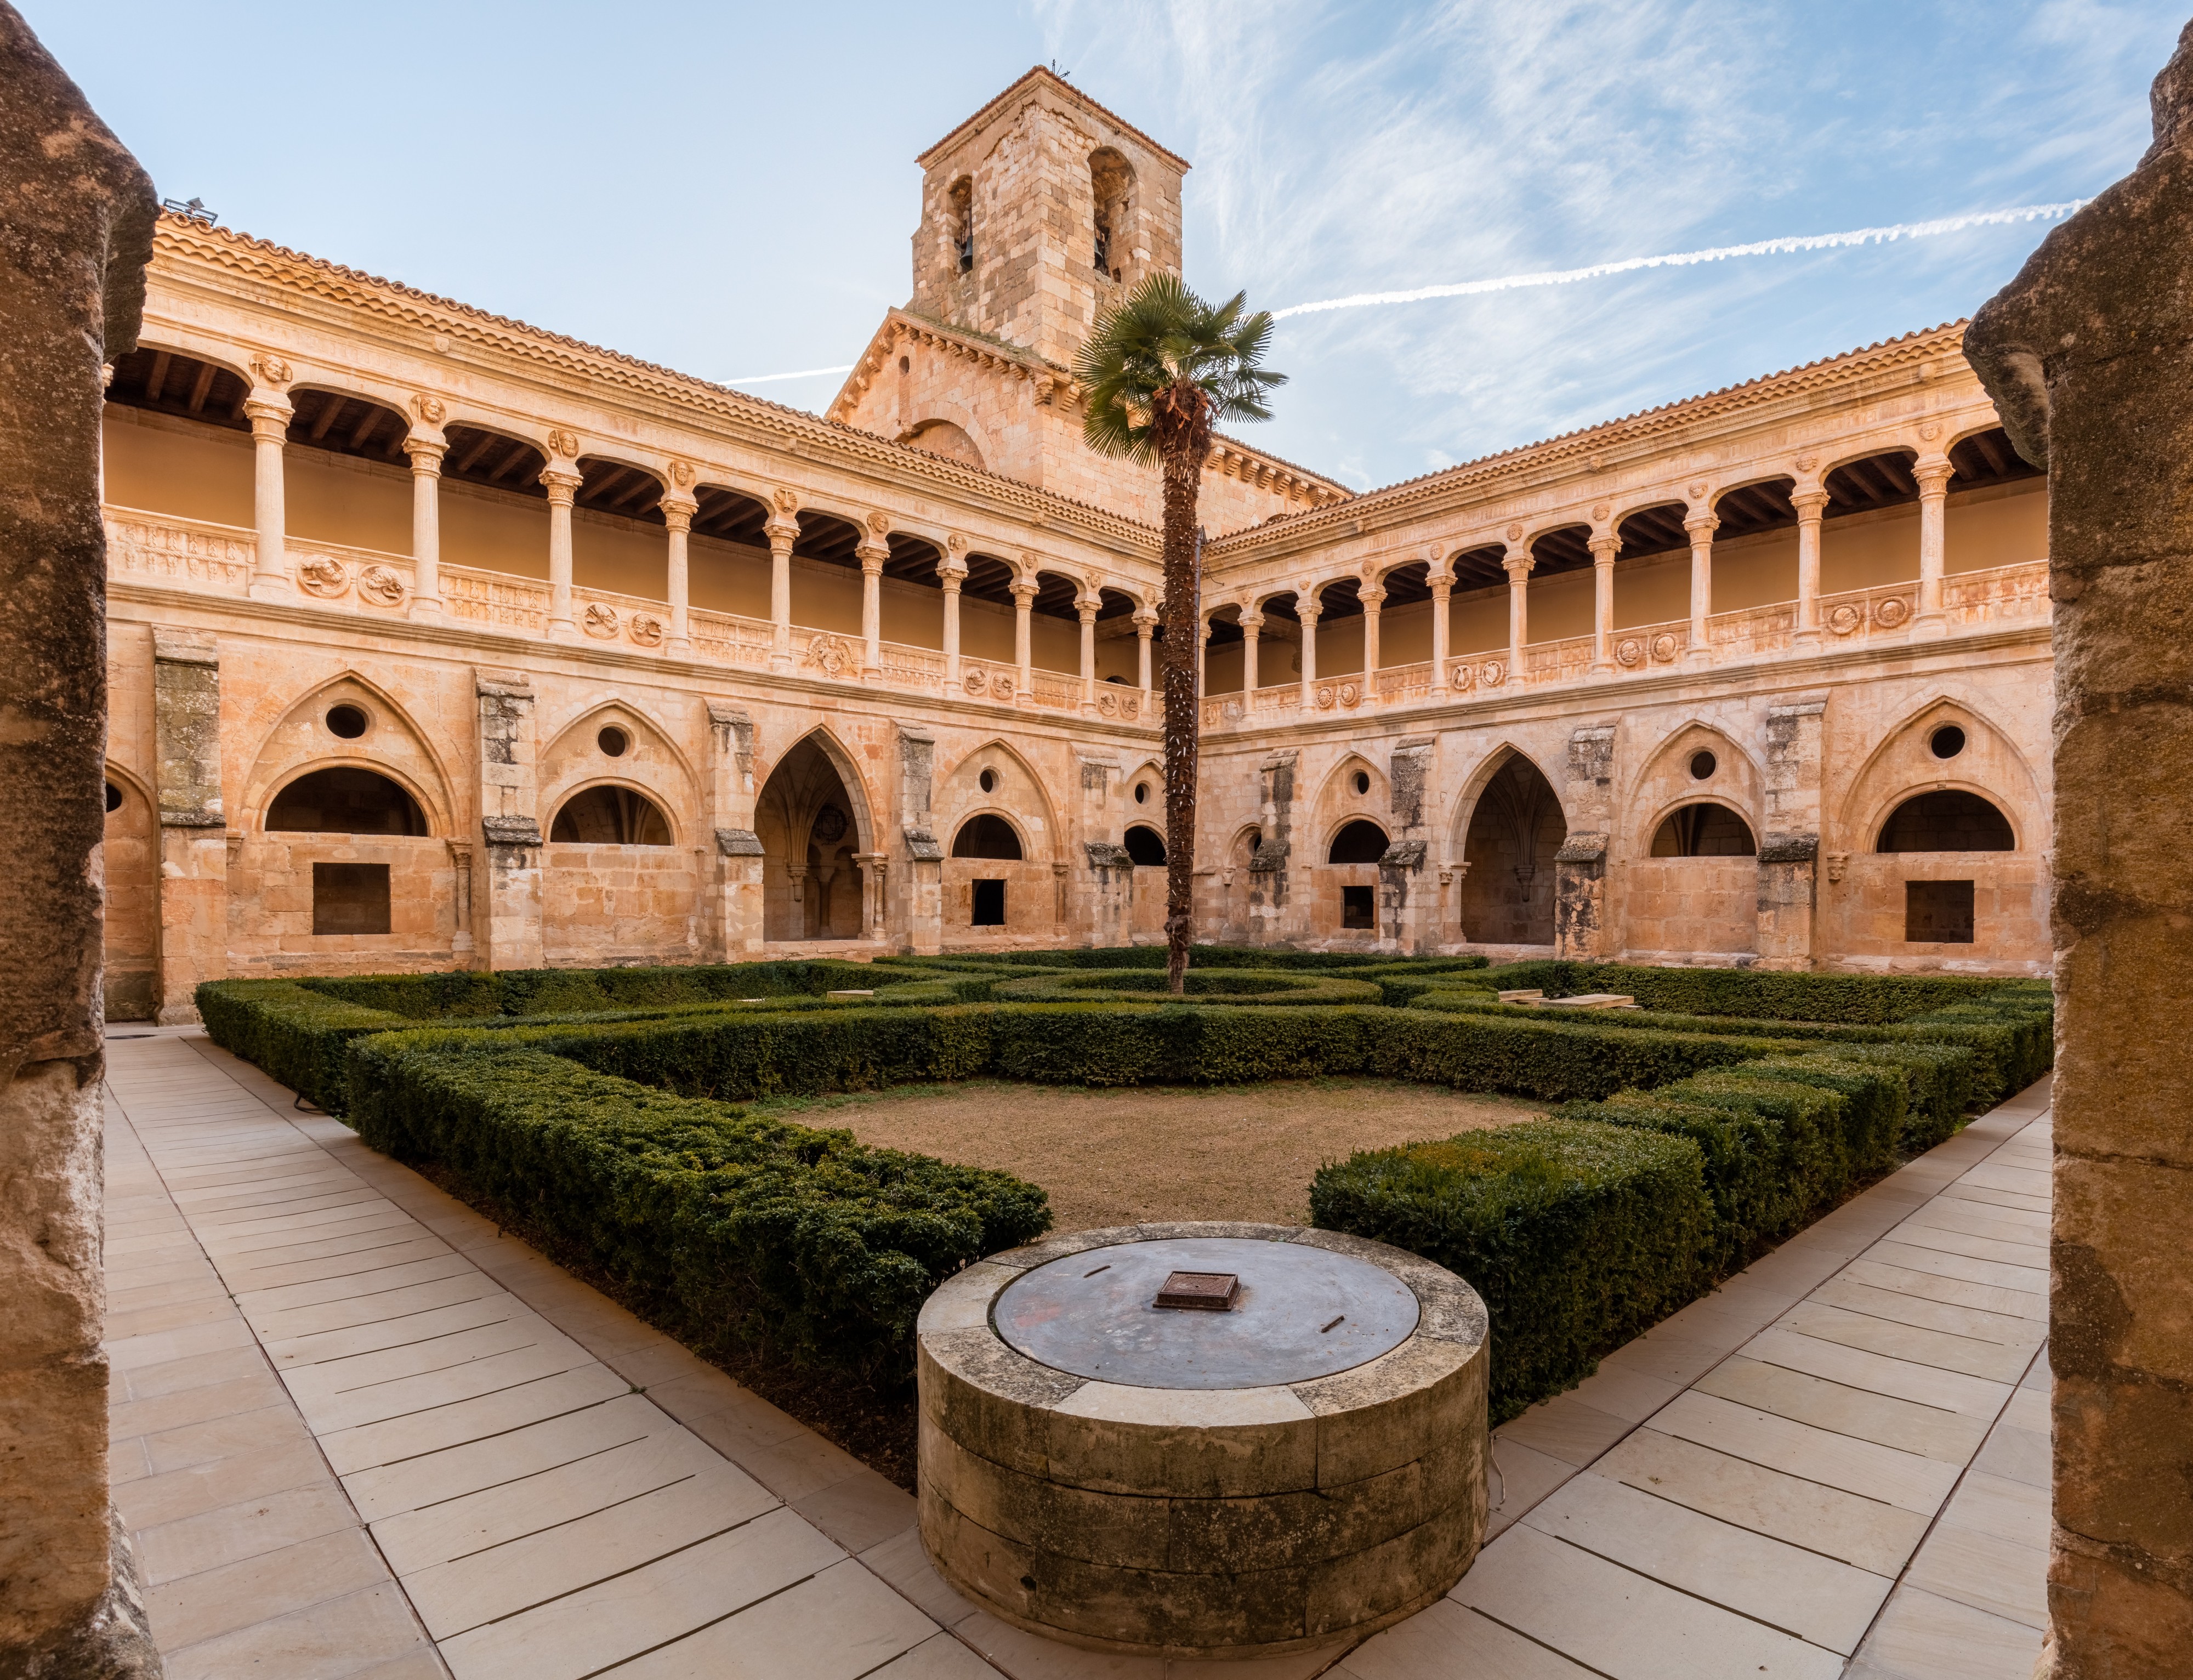 Monasterio de Santa María de Huerta, Santa María de Huerta Soria, España, 2015-12-28, DD 52-54 HDR